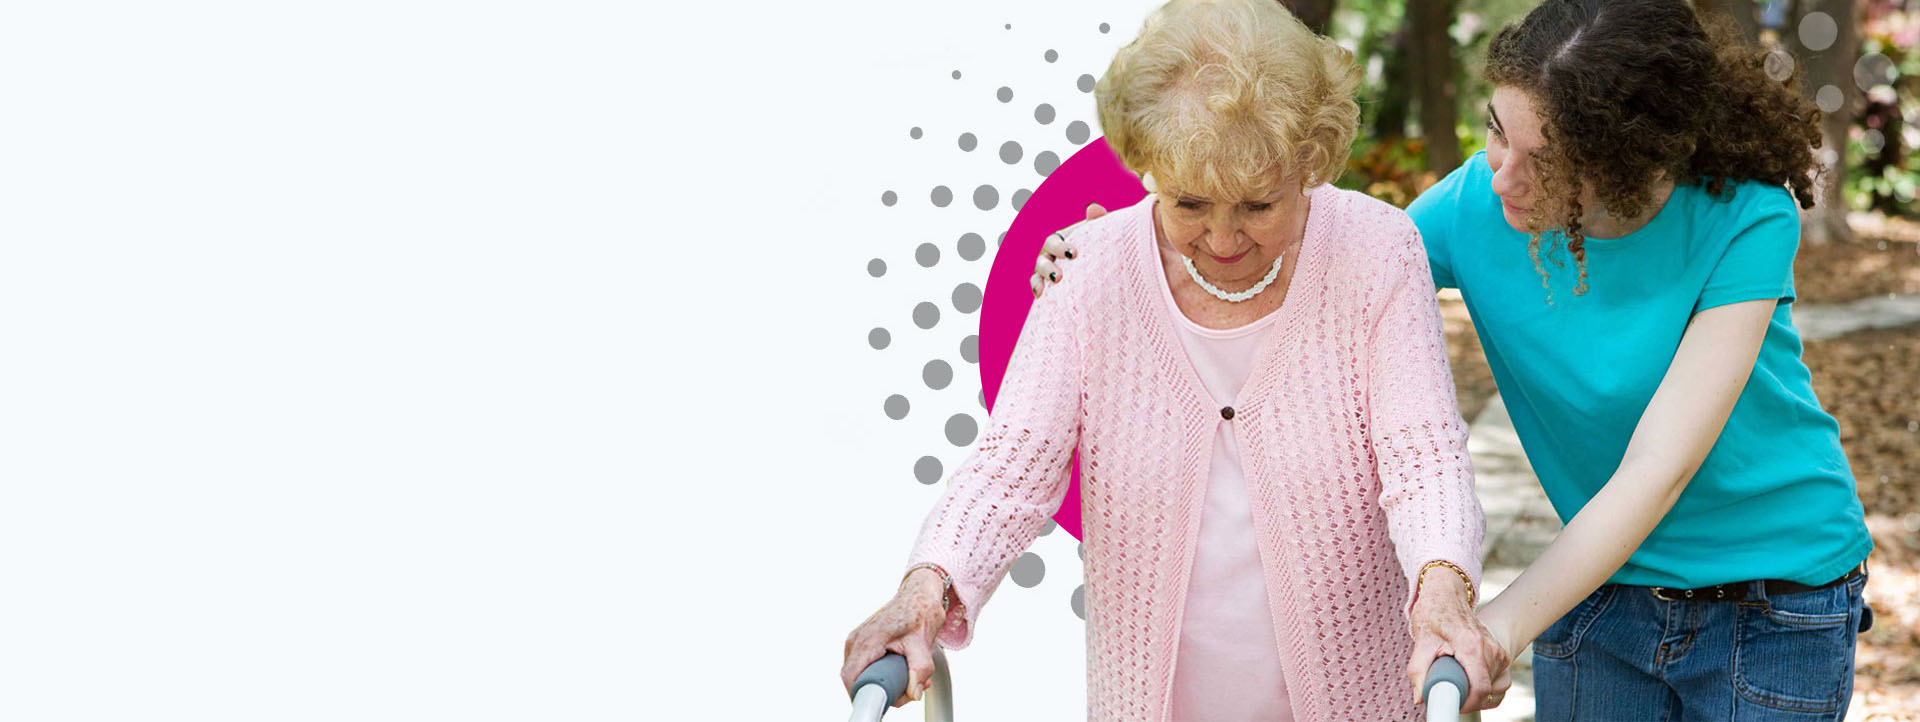 Praca dla opiekunek w Niemczech - aplikuj teraz na stanoiwsko: Opieka nad osobami starszymi